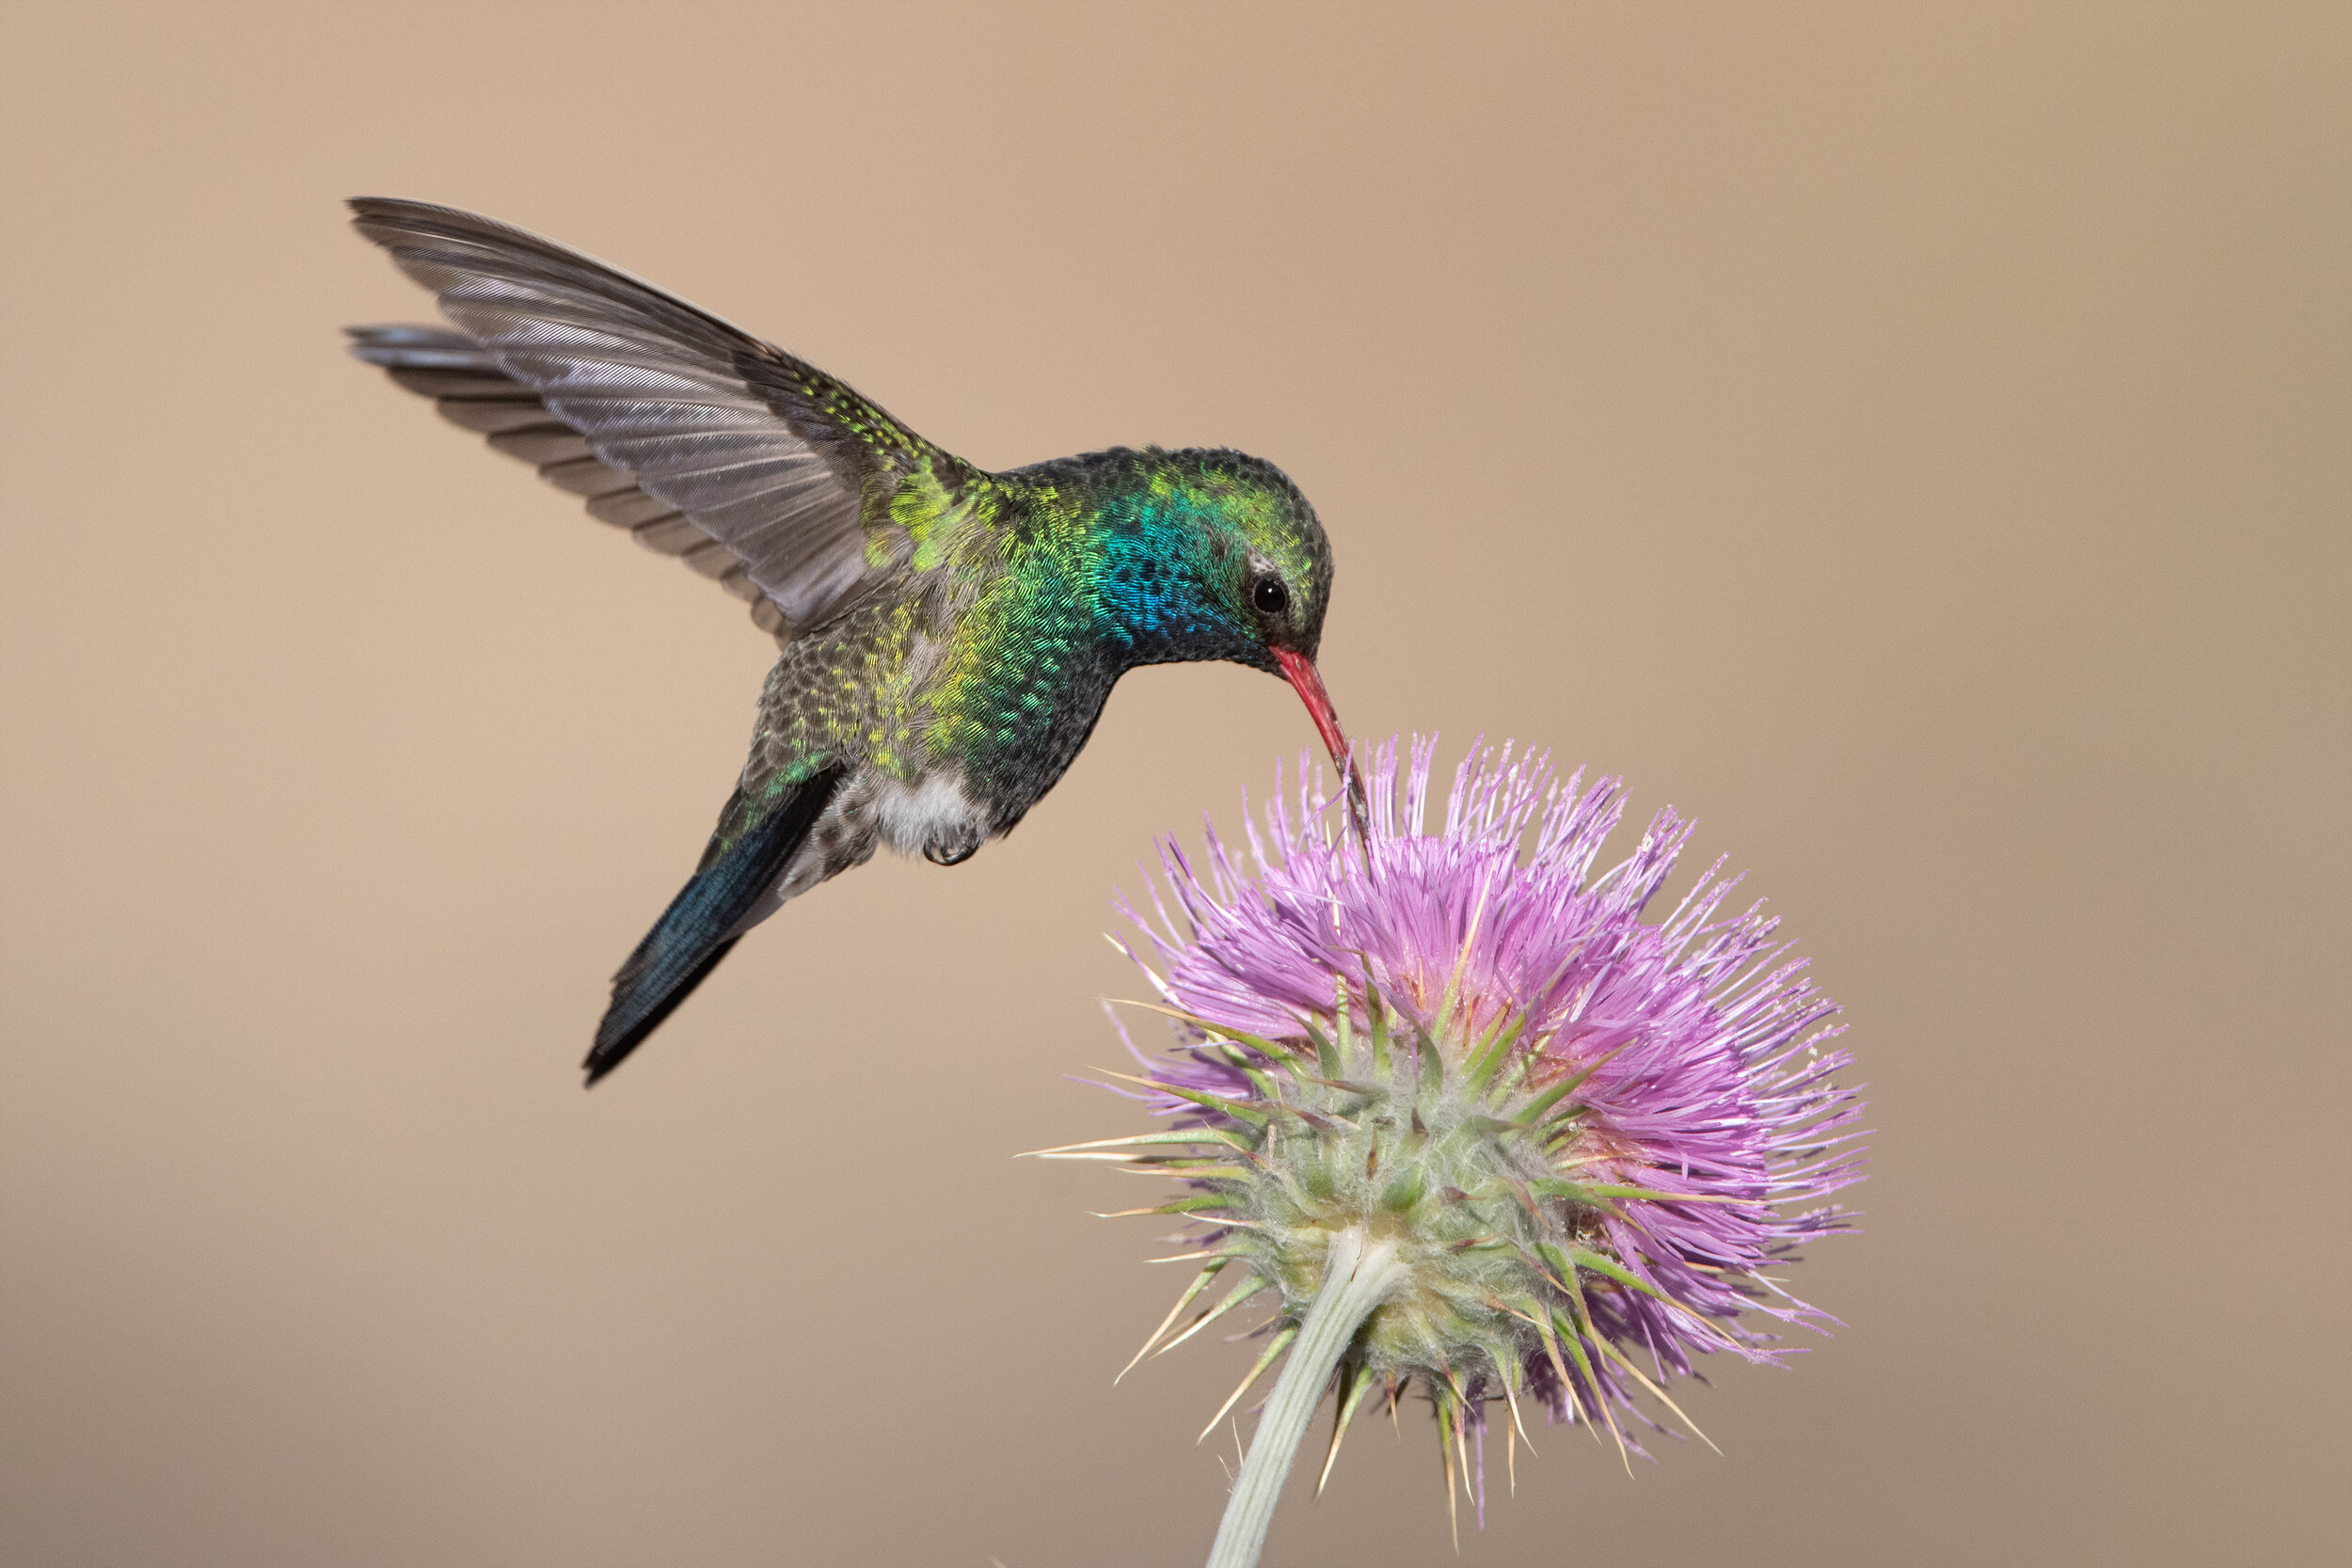 broad-billed_hummingbird_002_9277b.jpg